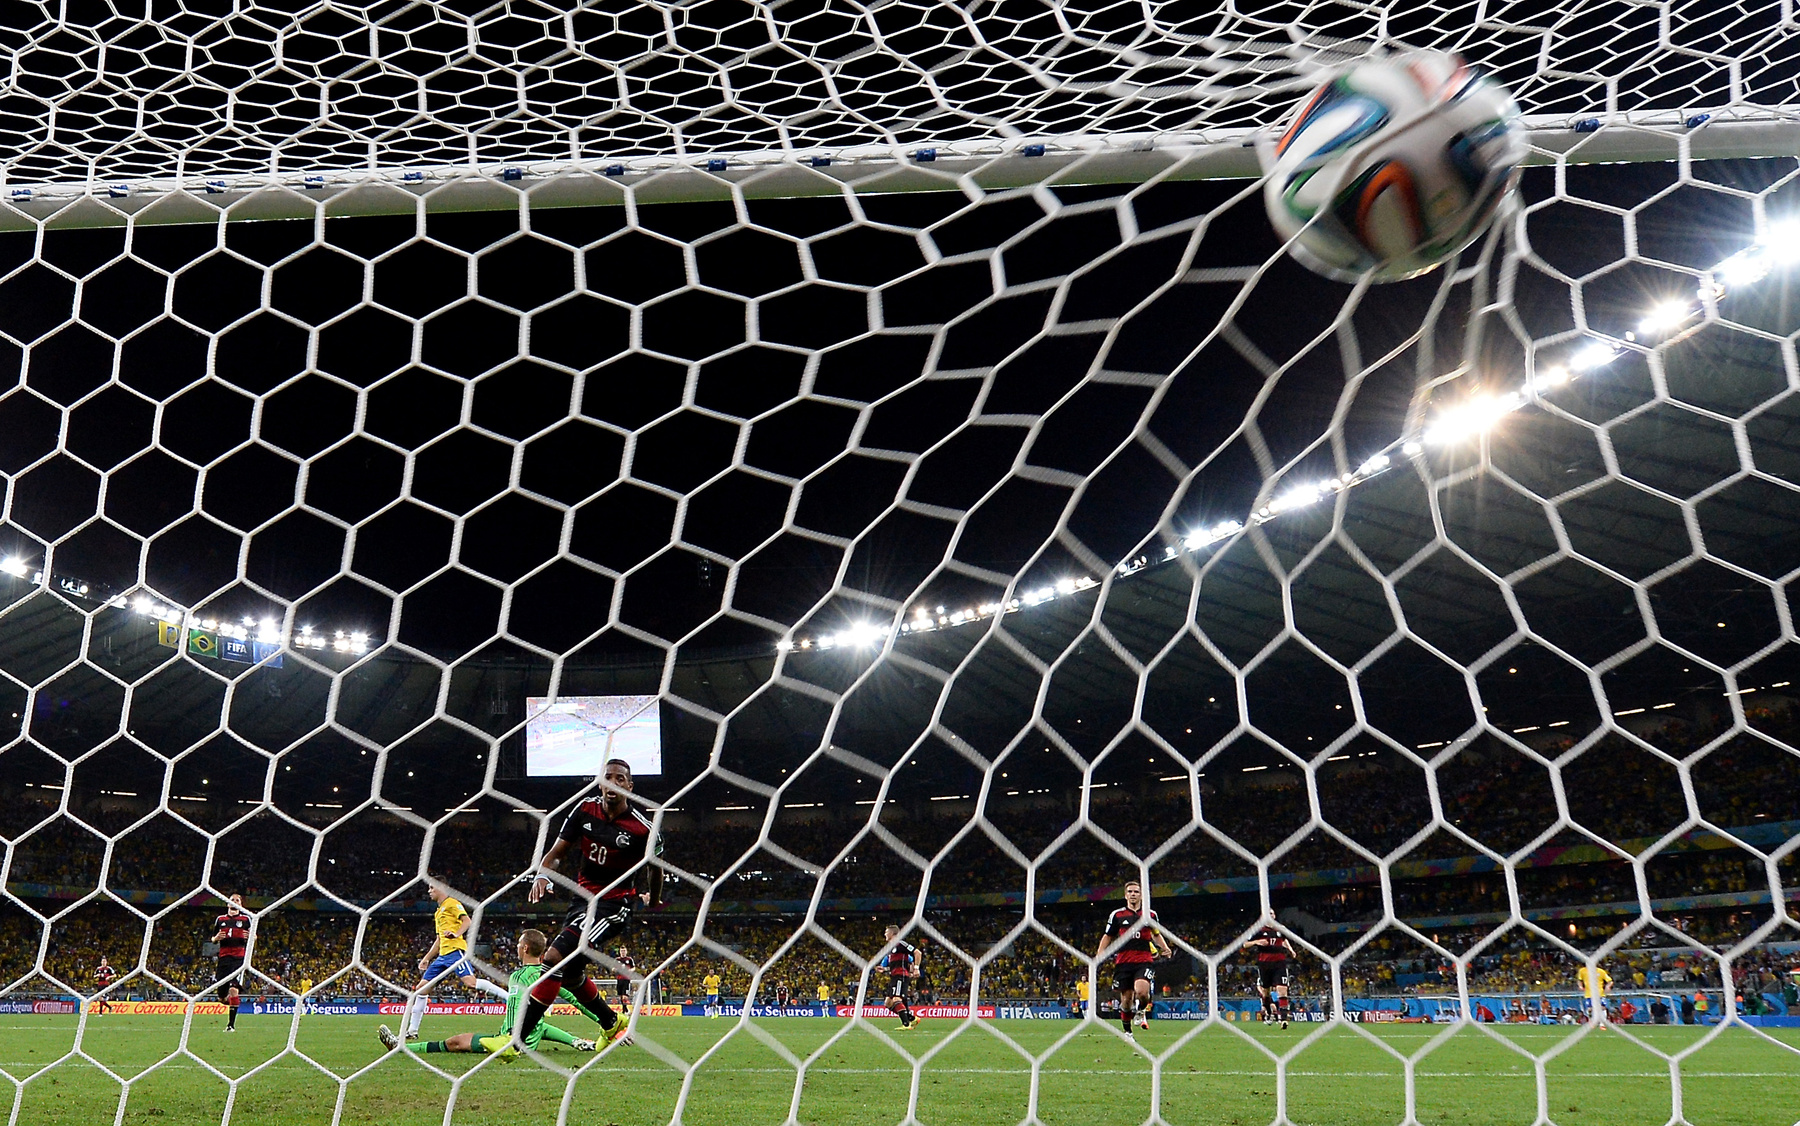 Németország bejutott a világbajnoki döntőbe.